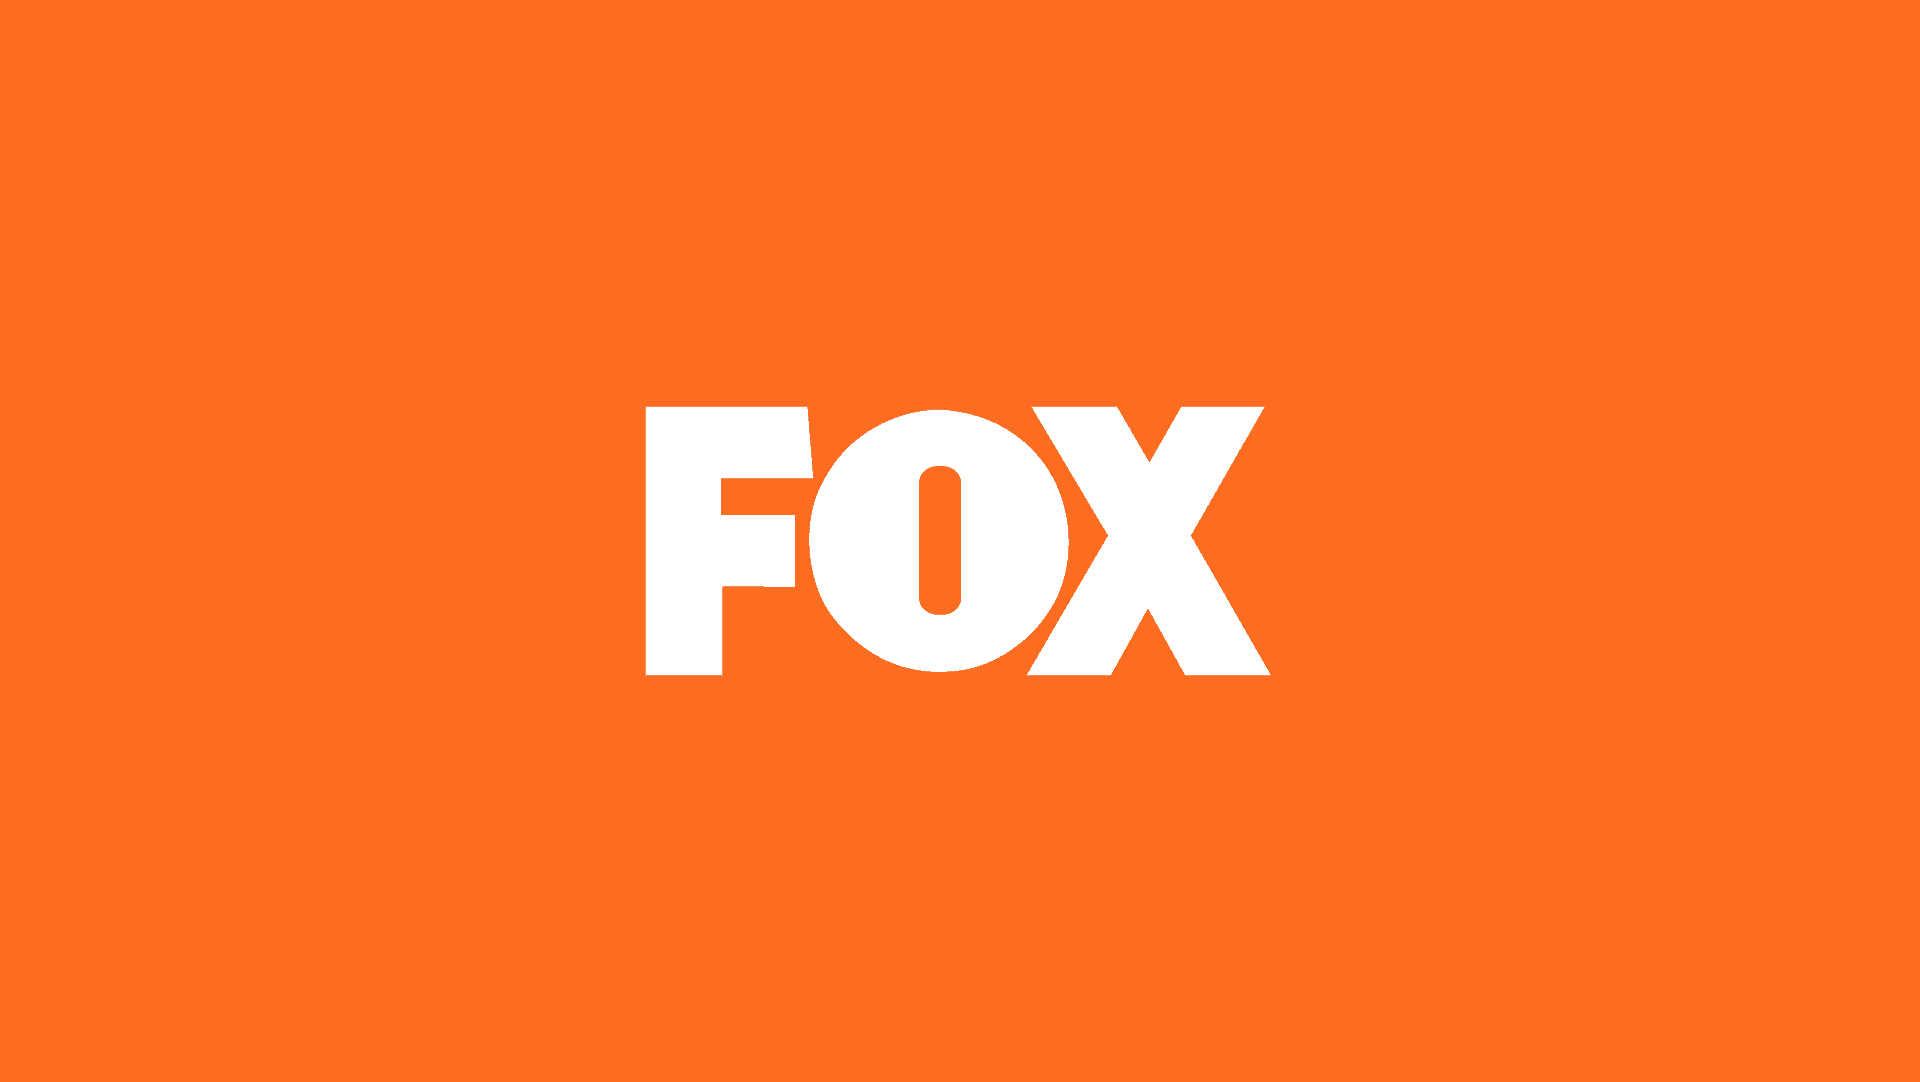 Grupo Fox vai produzir três novas séries no Brasil até 2019